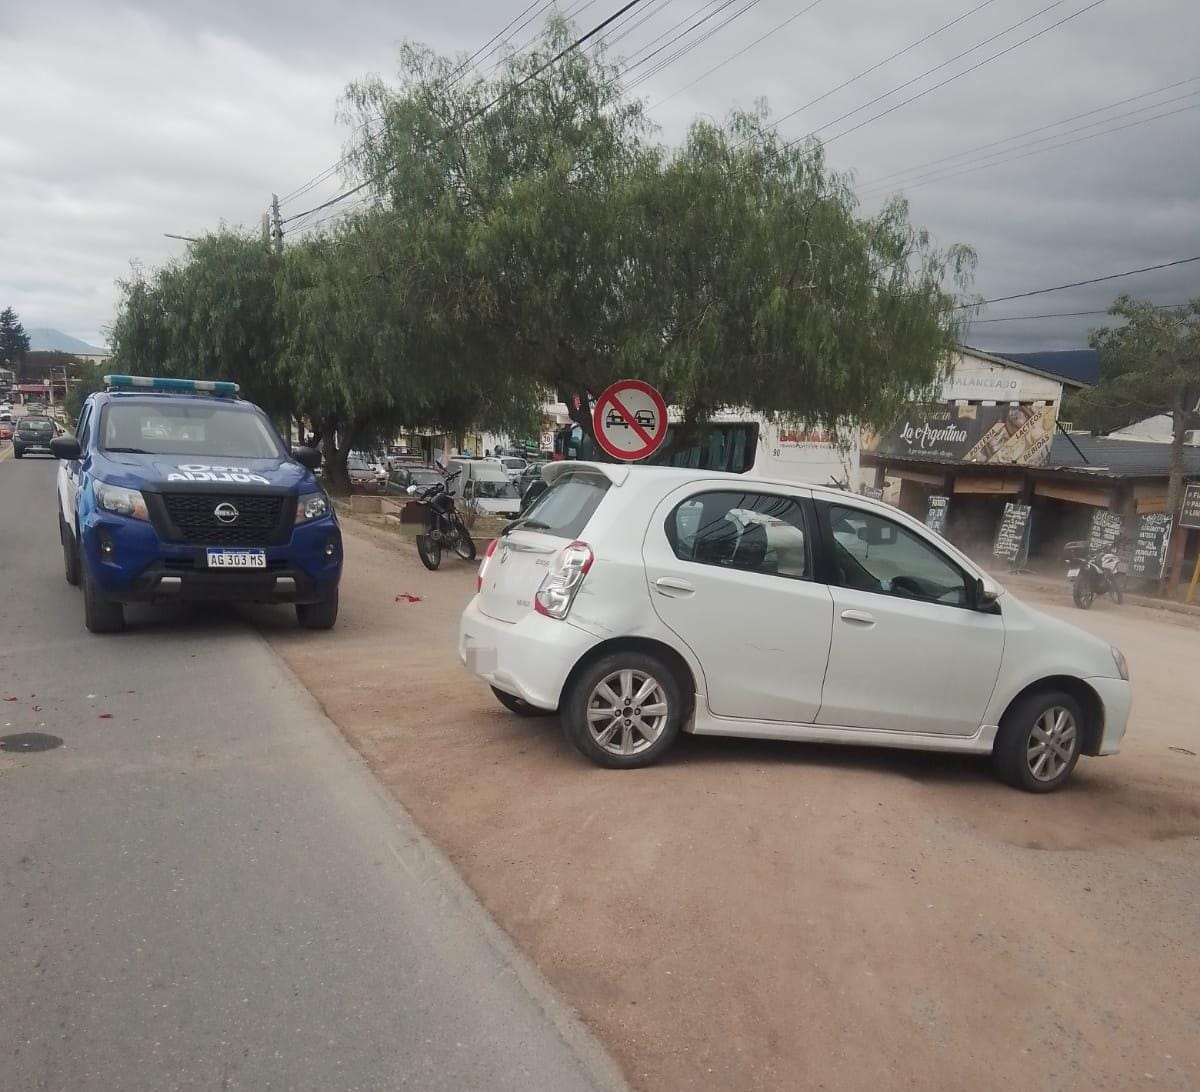 Fuerte choque entre un auto y una moto en Villa Santa Cruz del Lago